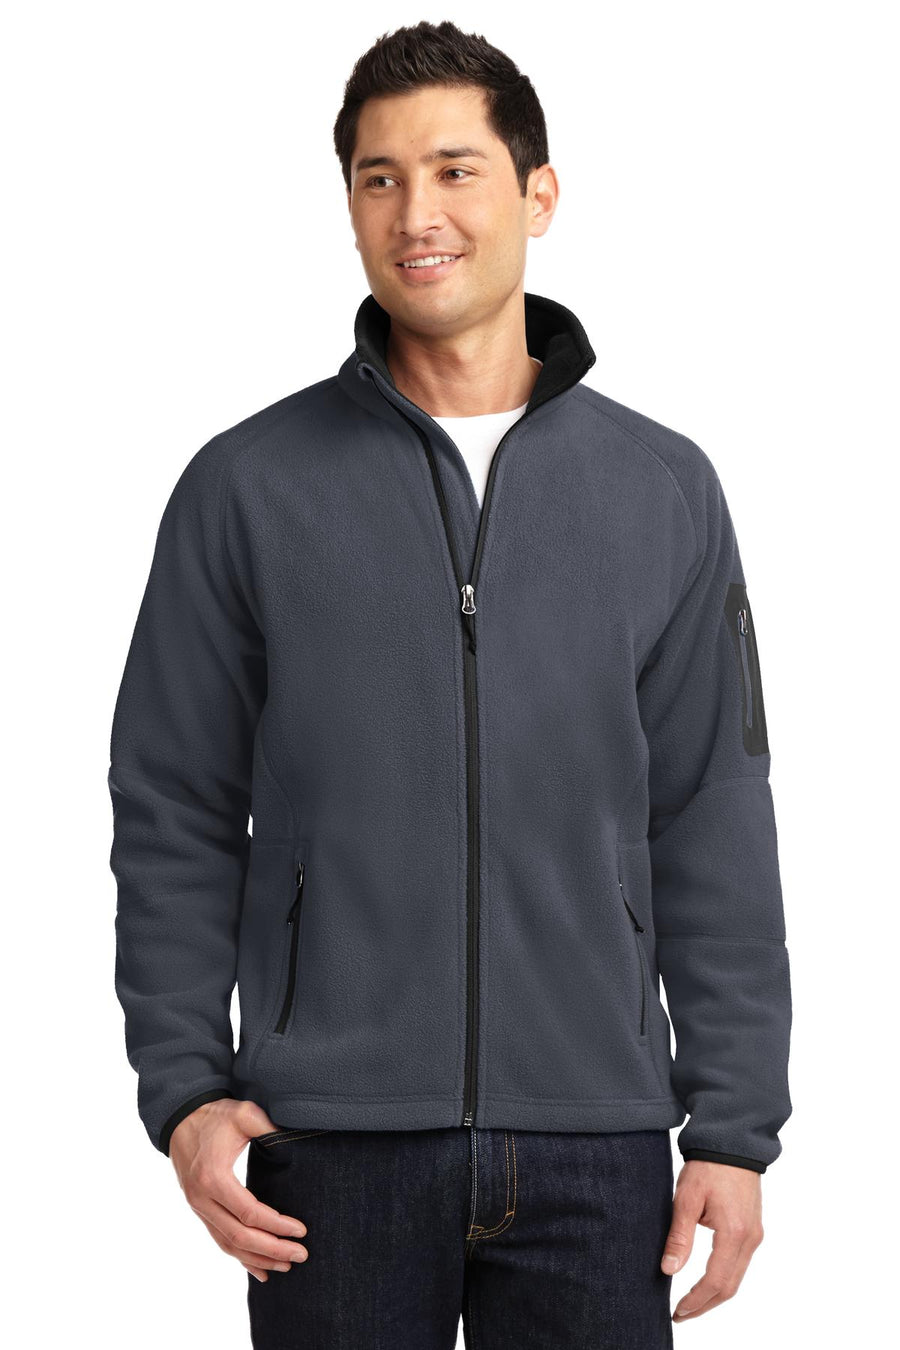 Port Authority Enhanced Value Fleece Full-Zip Jacket.